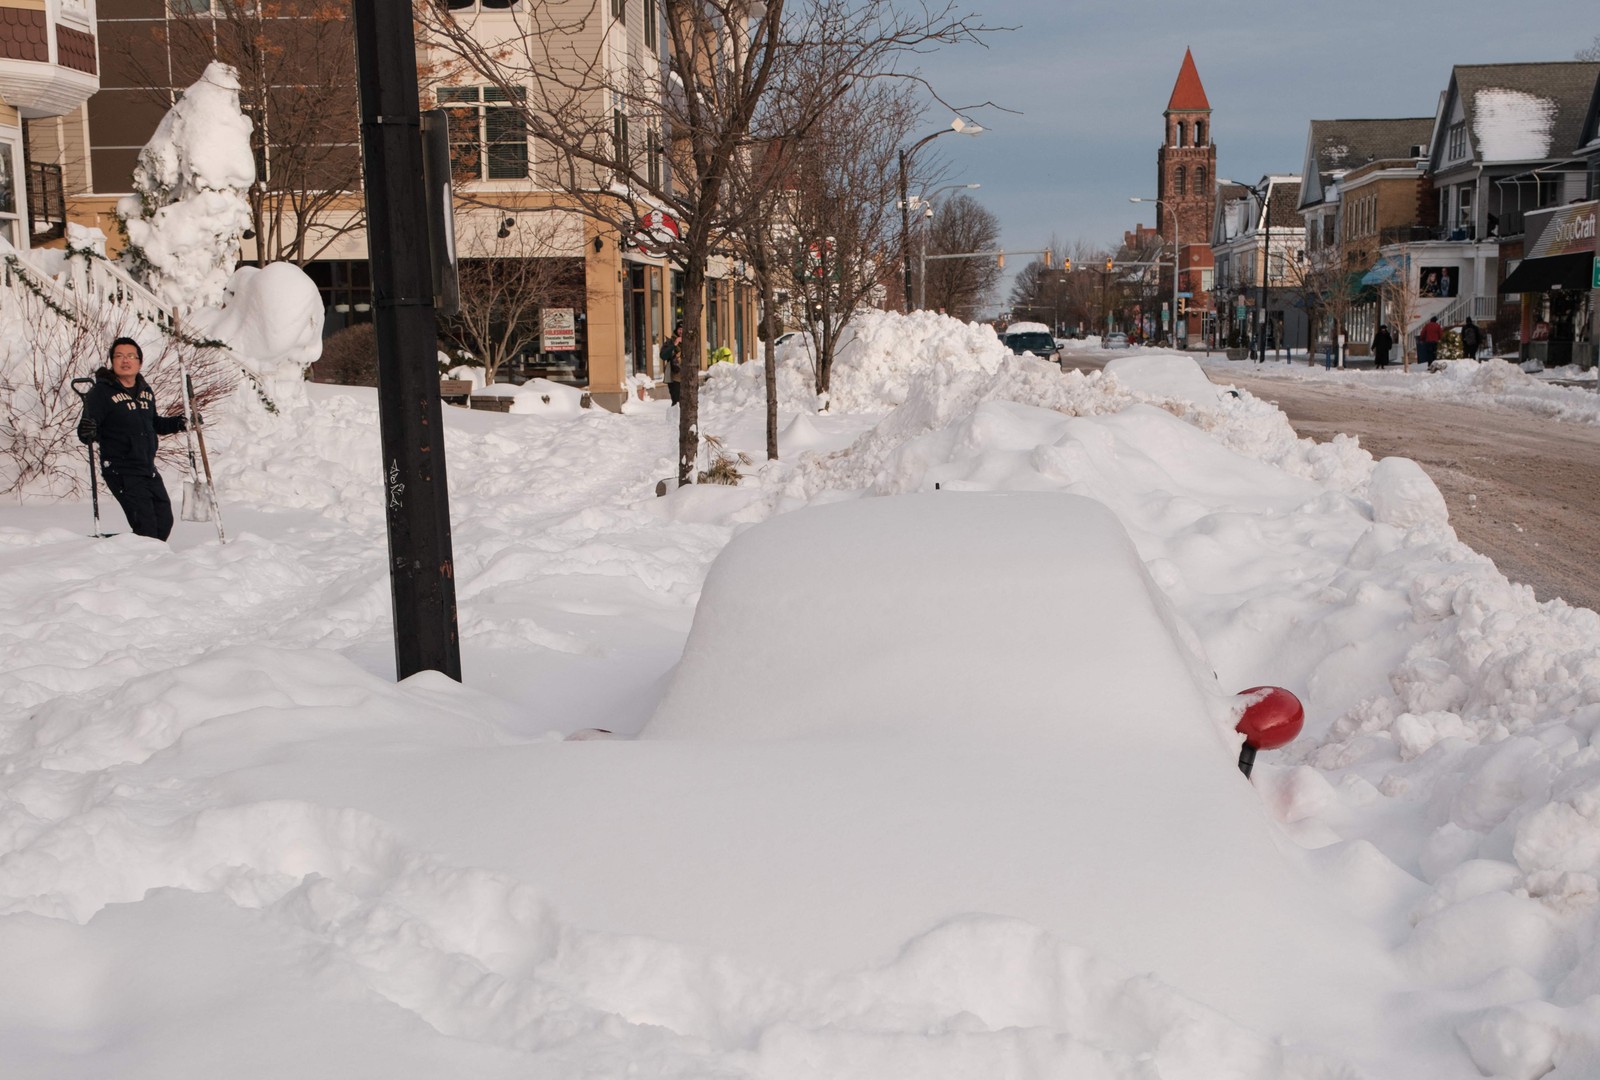 Considerada uma das piores nevascas do século, a tempestade matou mais de 50 pessoas, a maioria moradores de rua de Nova York — Foto: JOED VIERA/AFP